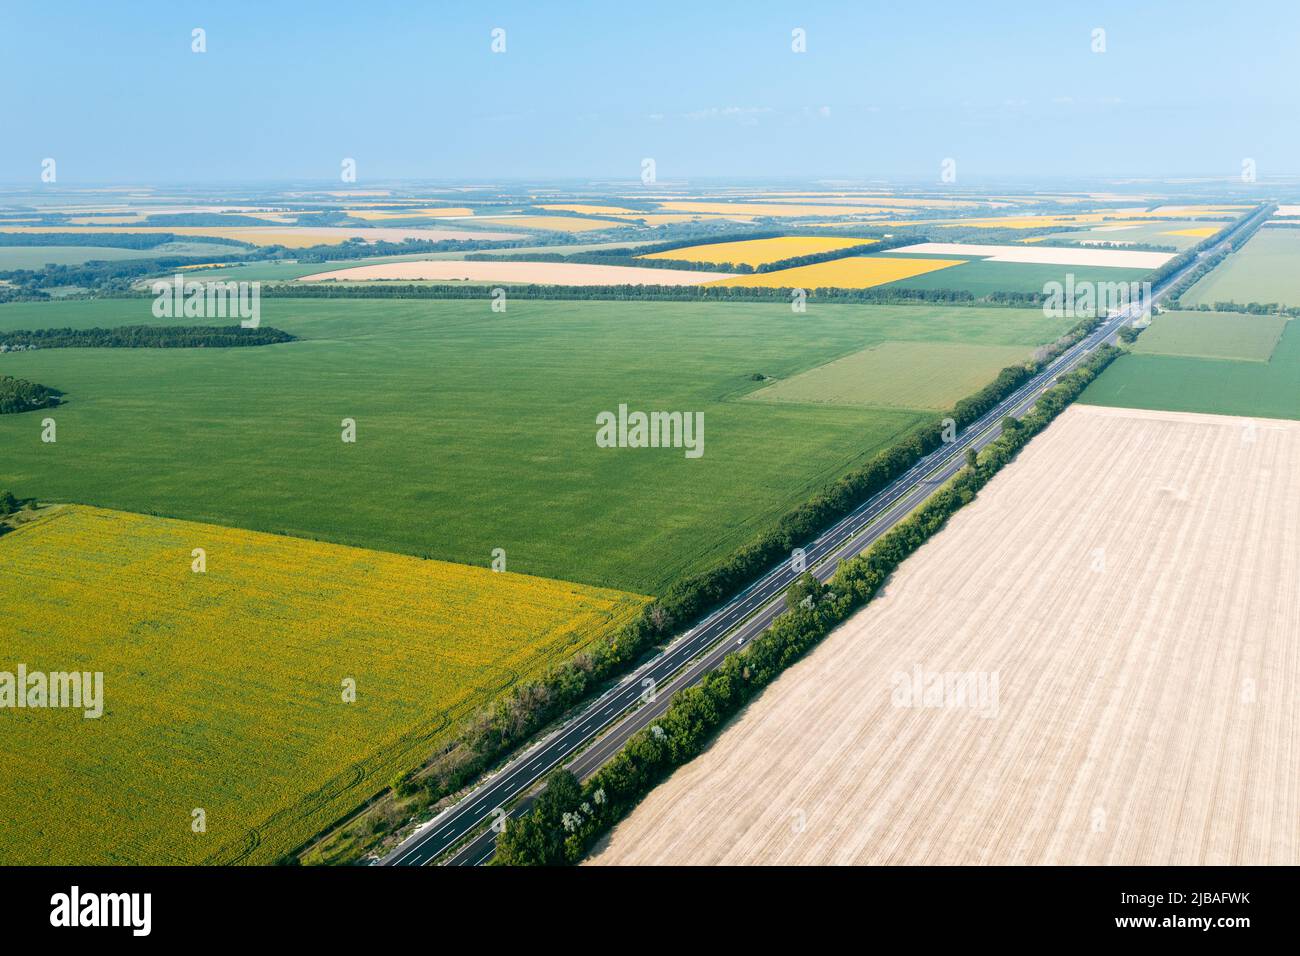 Terreno agricolo: Aree di vari campi agricoli di grande altezza: Campi verdi e gialli separati da una strada. Agricoltura in un paese agrario - fuco aereo di piantagioni. Foto Stock